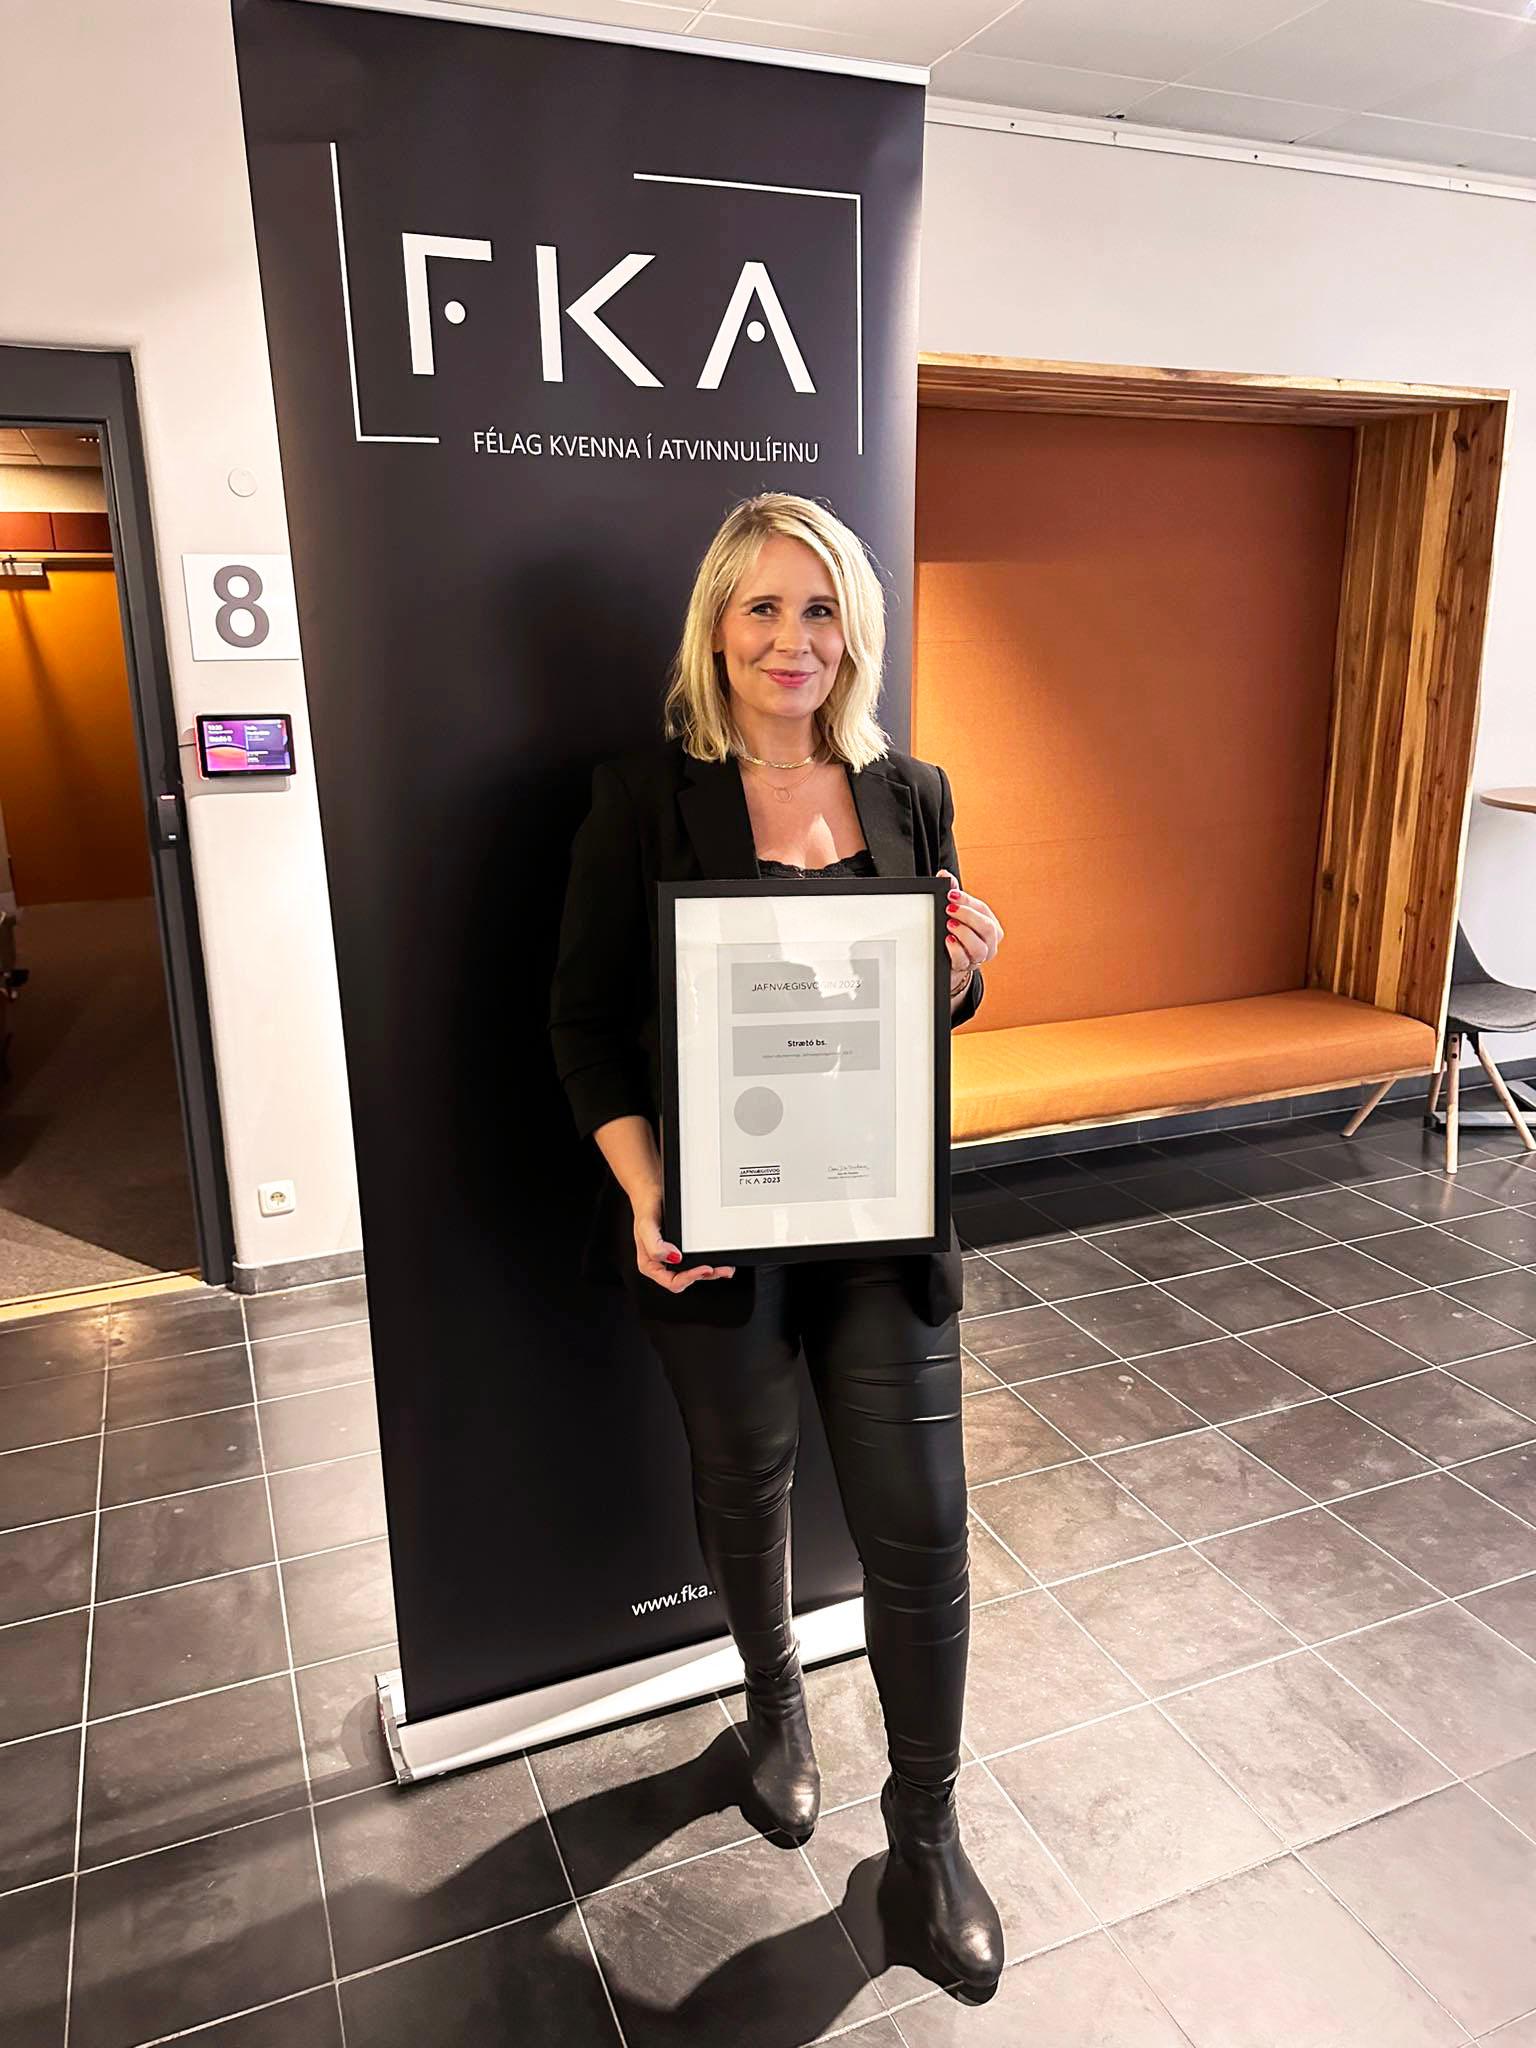 Sigurborg Þórarinsdóttir, director of HR and quality management at Strætó, accepted the award on behalf of Strætó